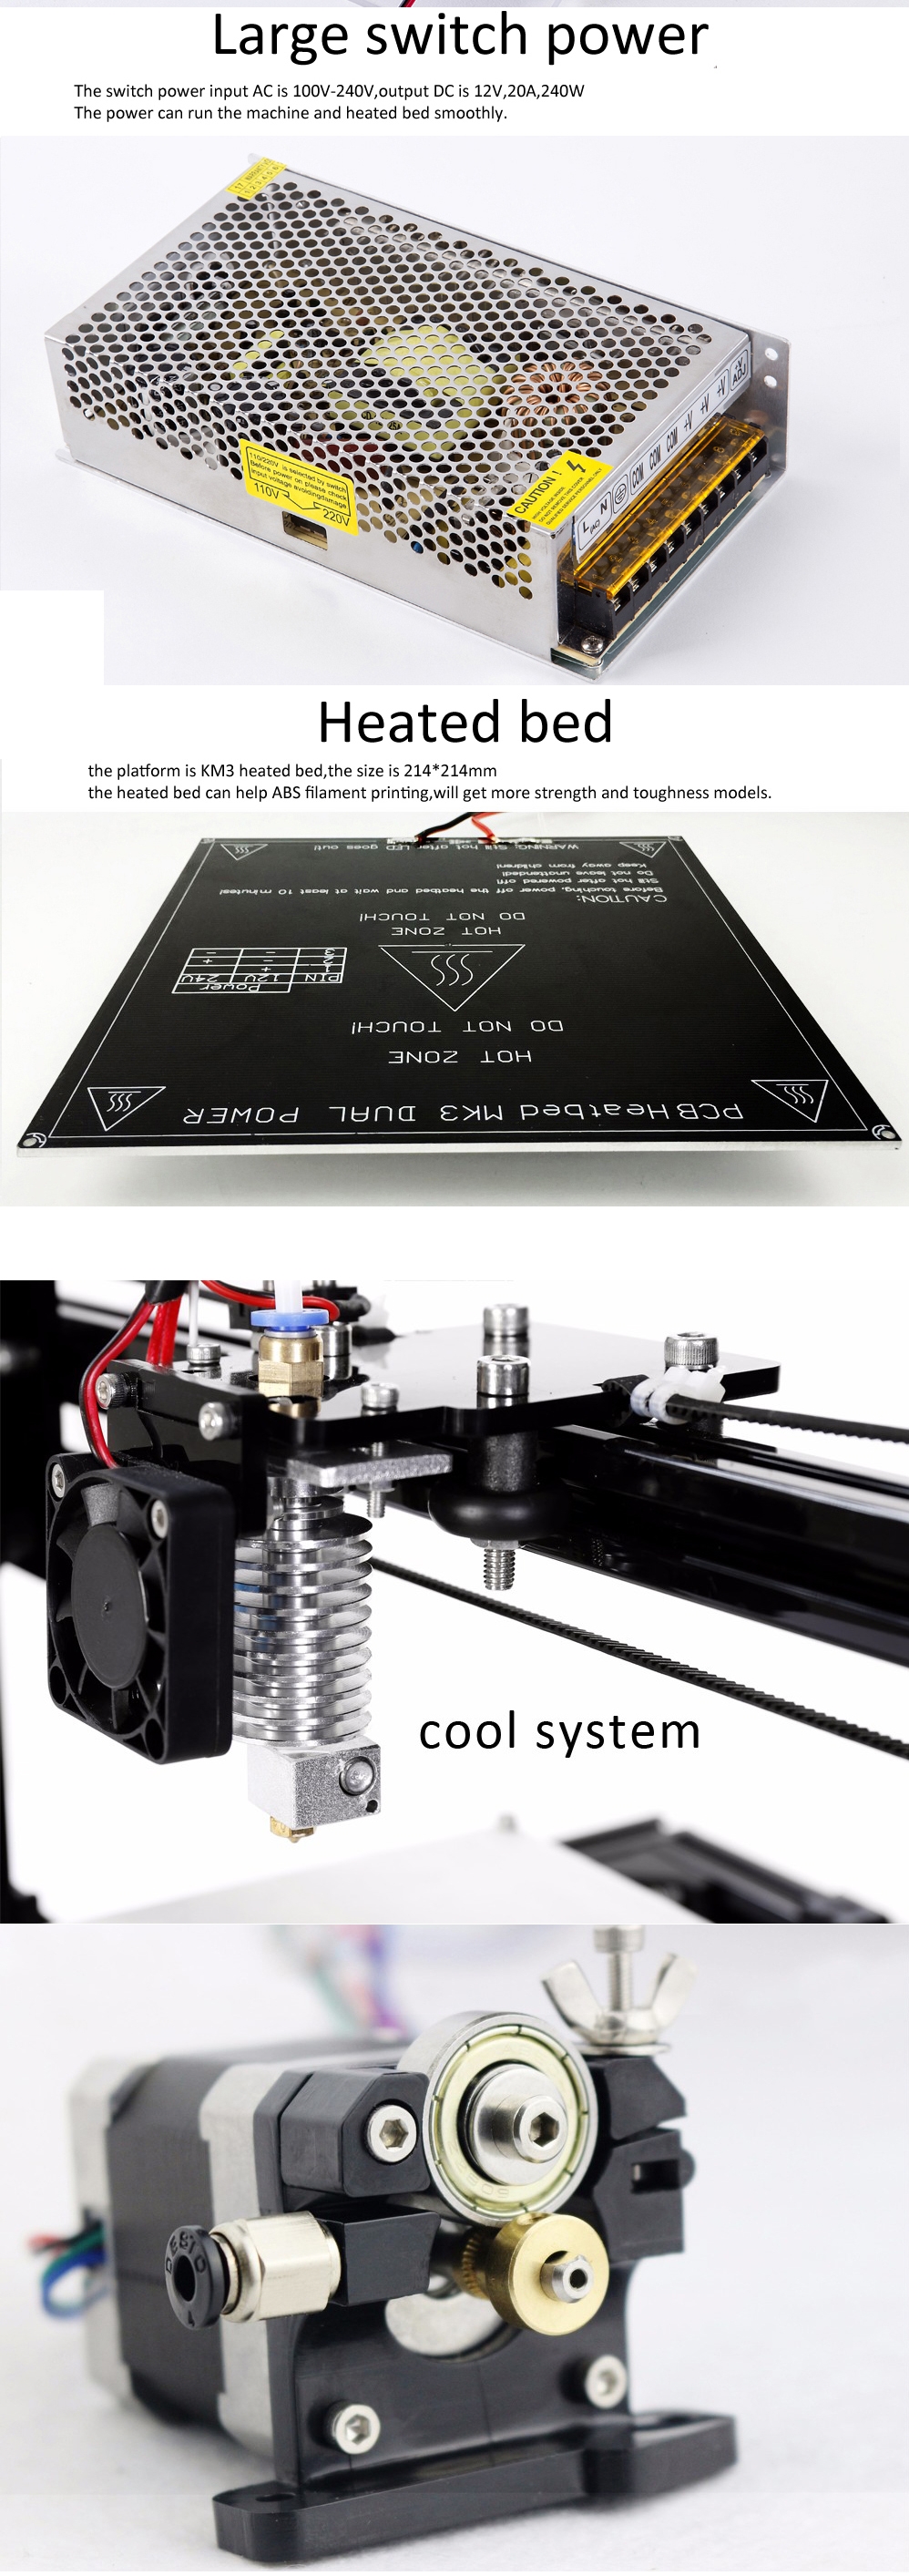 FLSUN® C Plus Desktop DIY 3D Printer With Touch Screen Dual Nozzle Auto Leveling Double Z-motors Support Flexible Filament 300*300*420mm Printing Size 4